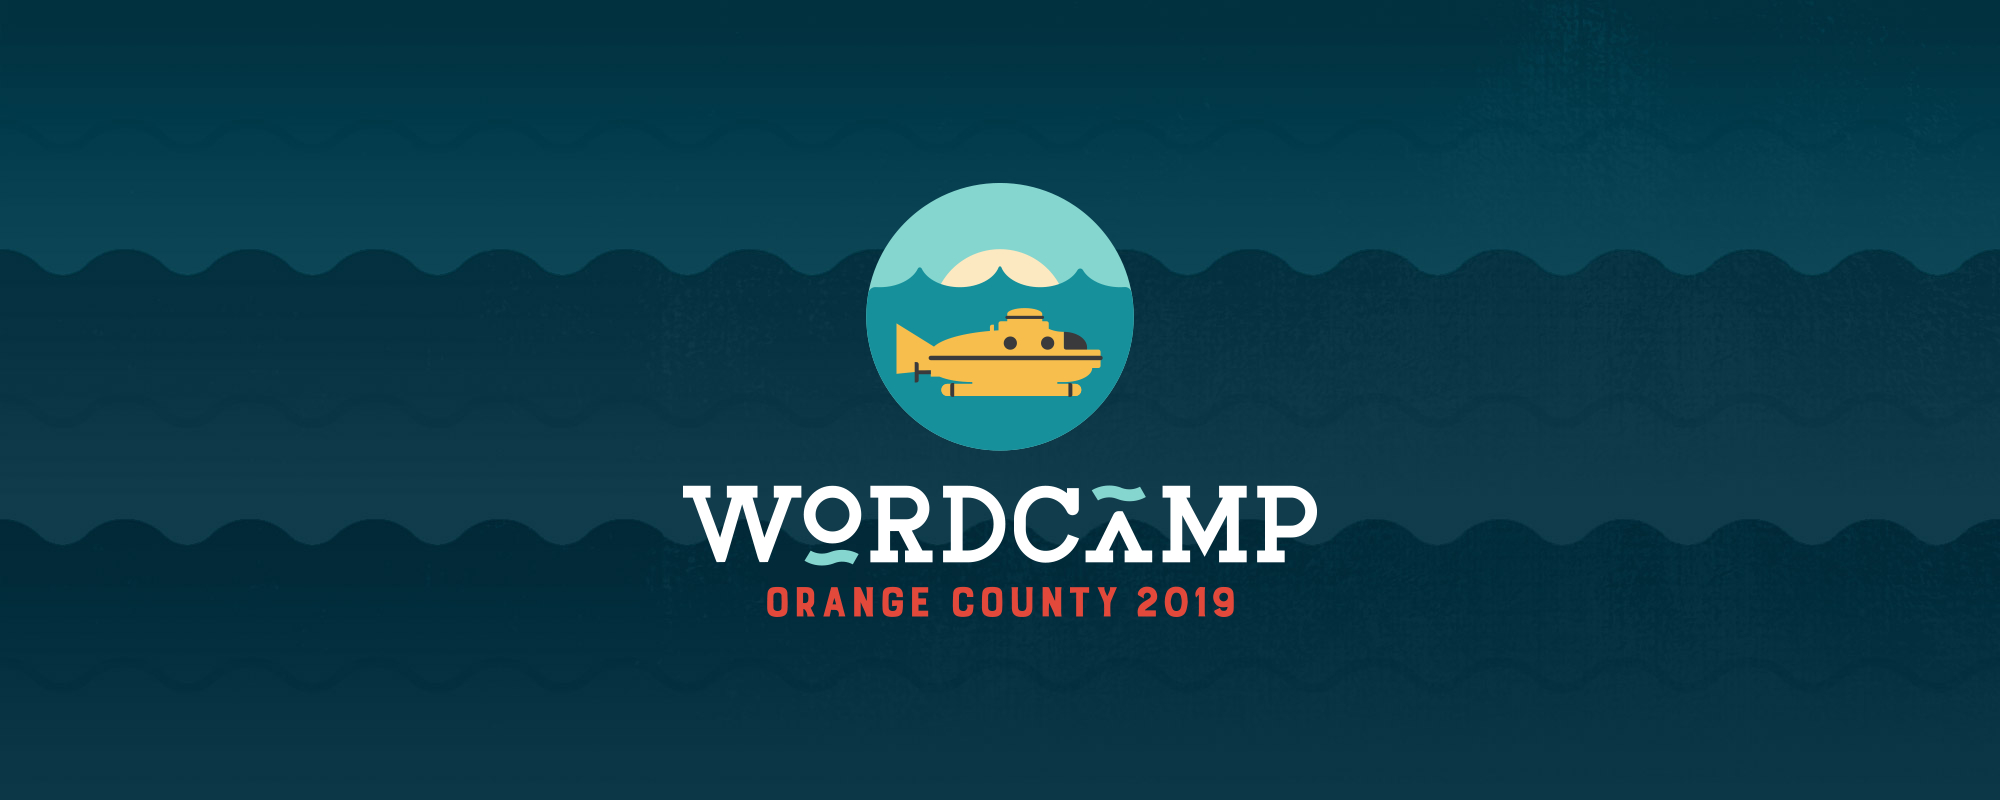 The WordCamp Orange Couny 2019 submarine logo overlaying illustrated waves